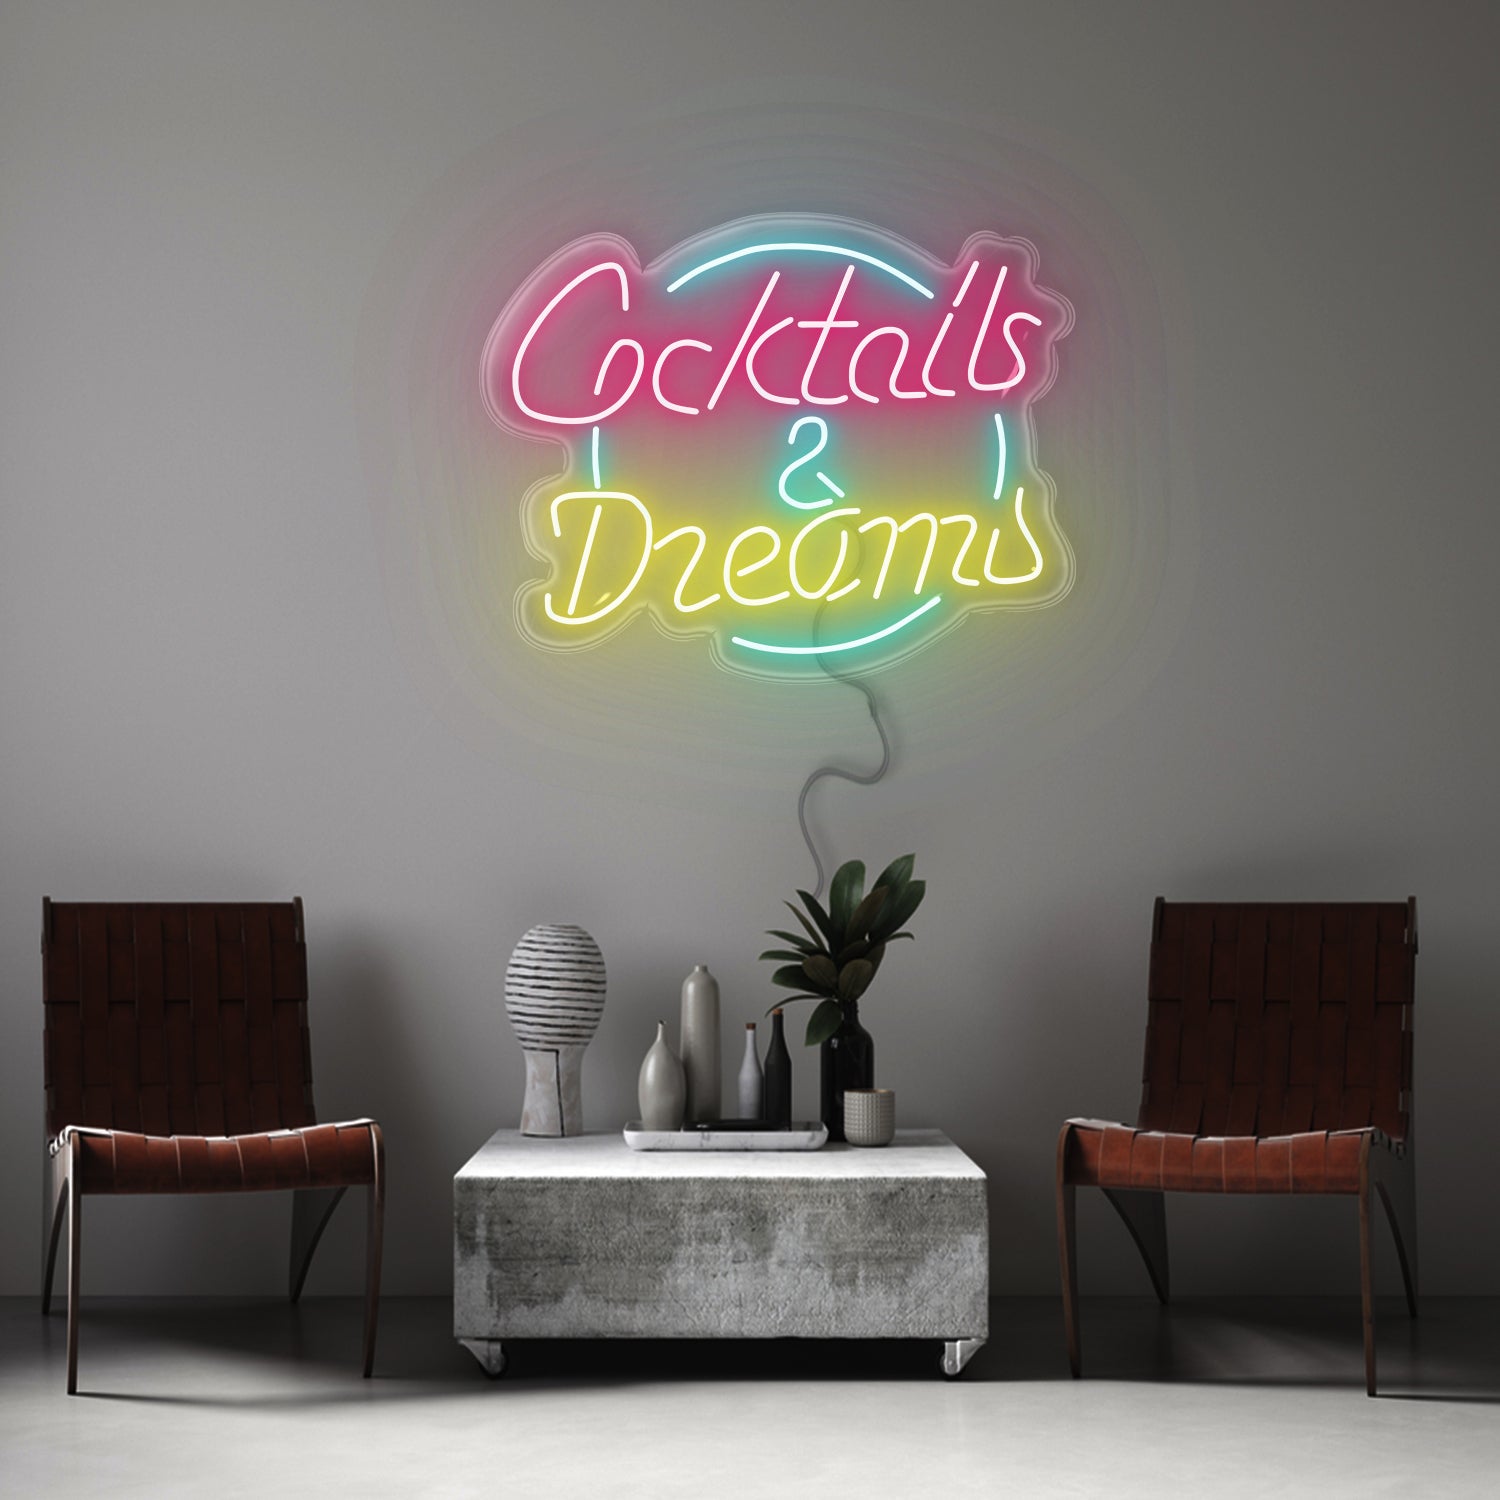 Cocktail dreams